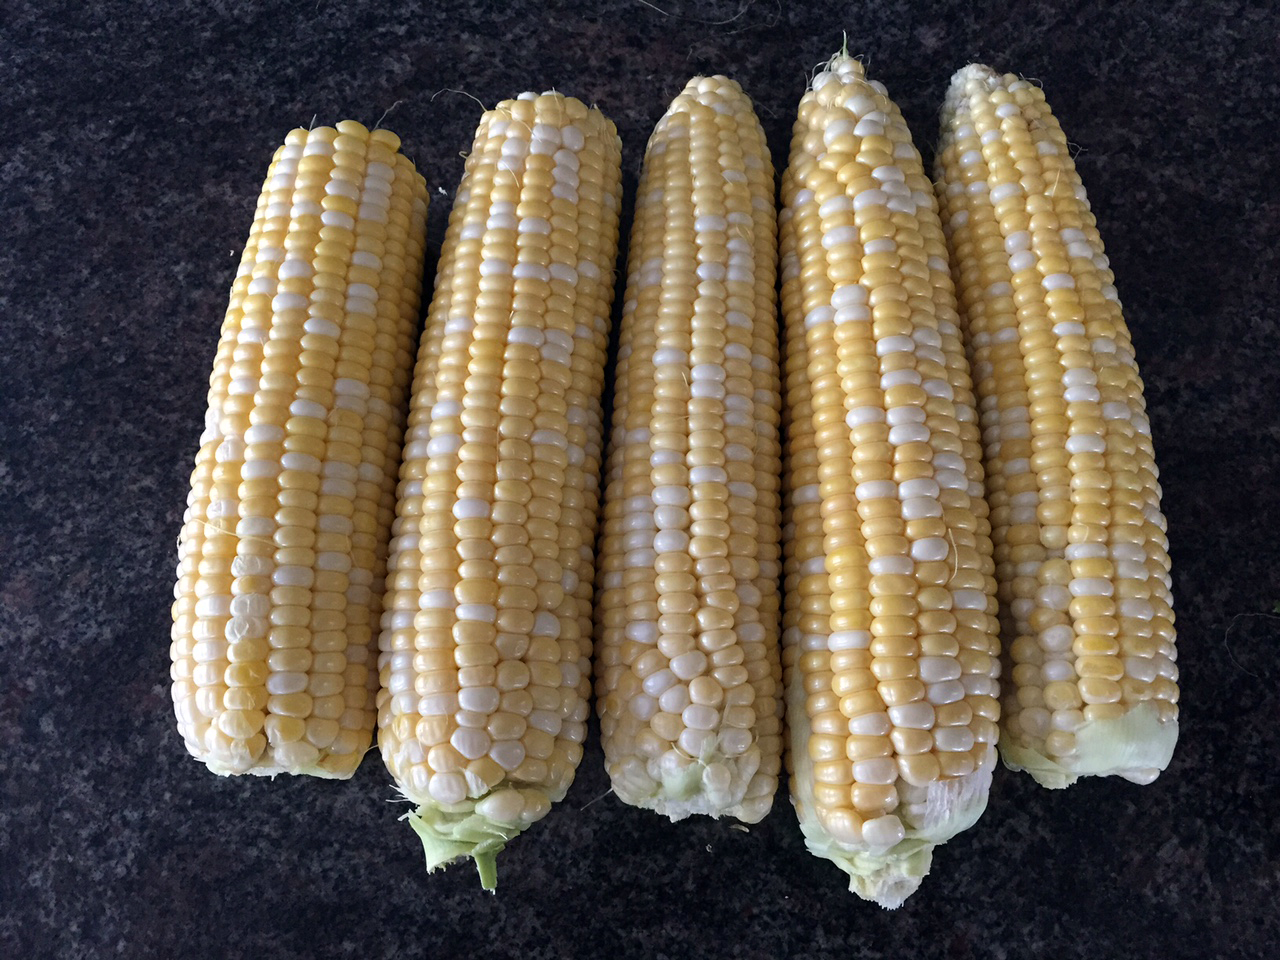 Utah sweet corn